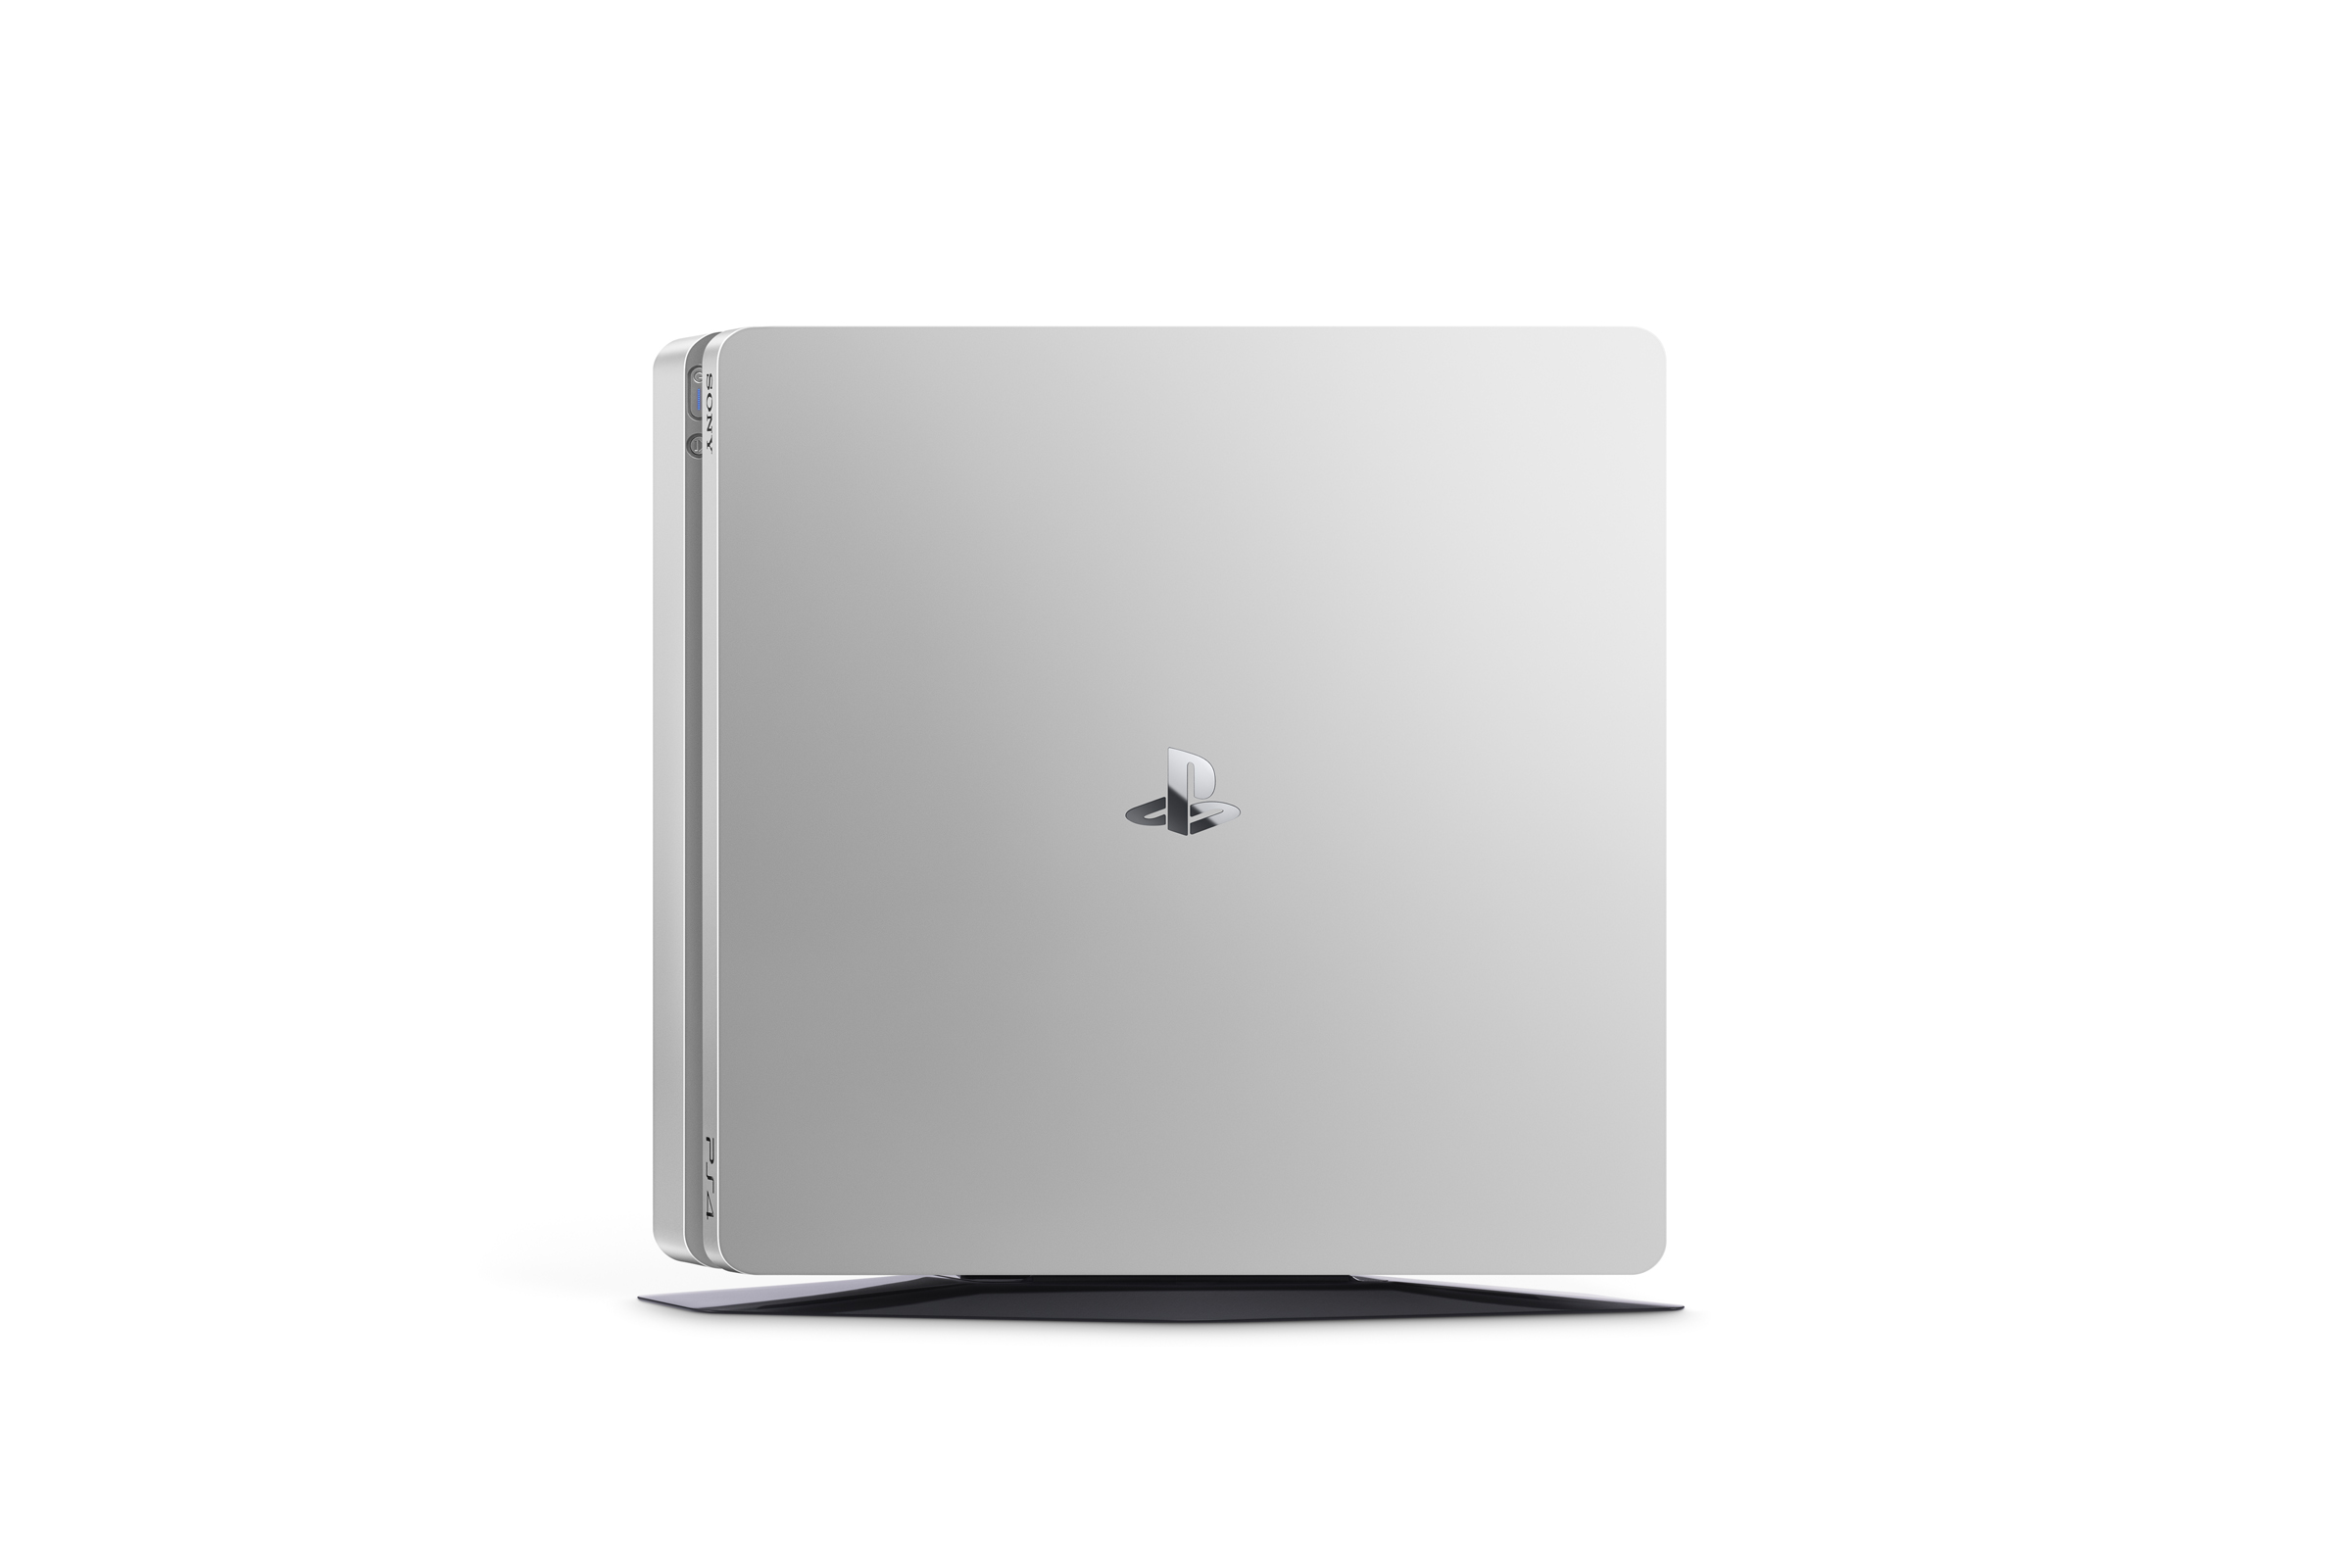 La Playstation 4 Slim Gold et Silver annoncée (23)